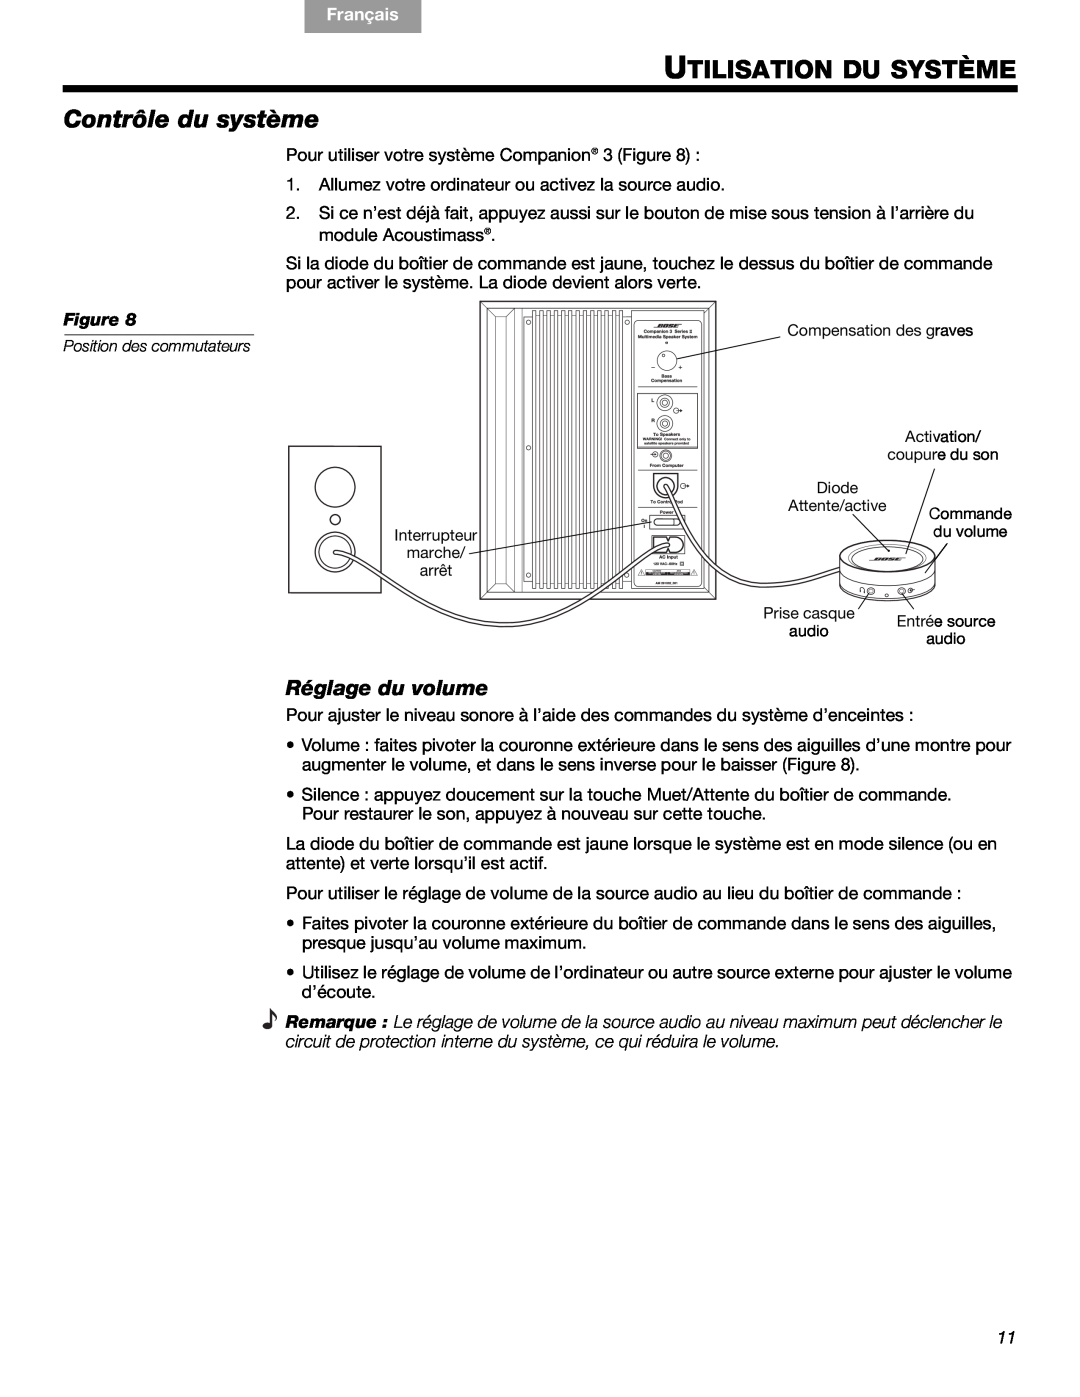 Bose 3 manual Utilisation Du Système, Contrôle du système, Réglage du volume, English Español, Français 